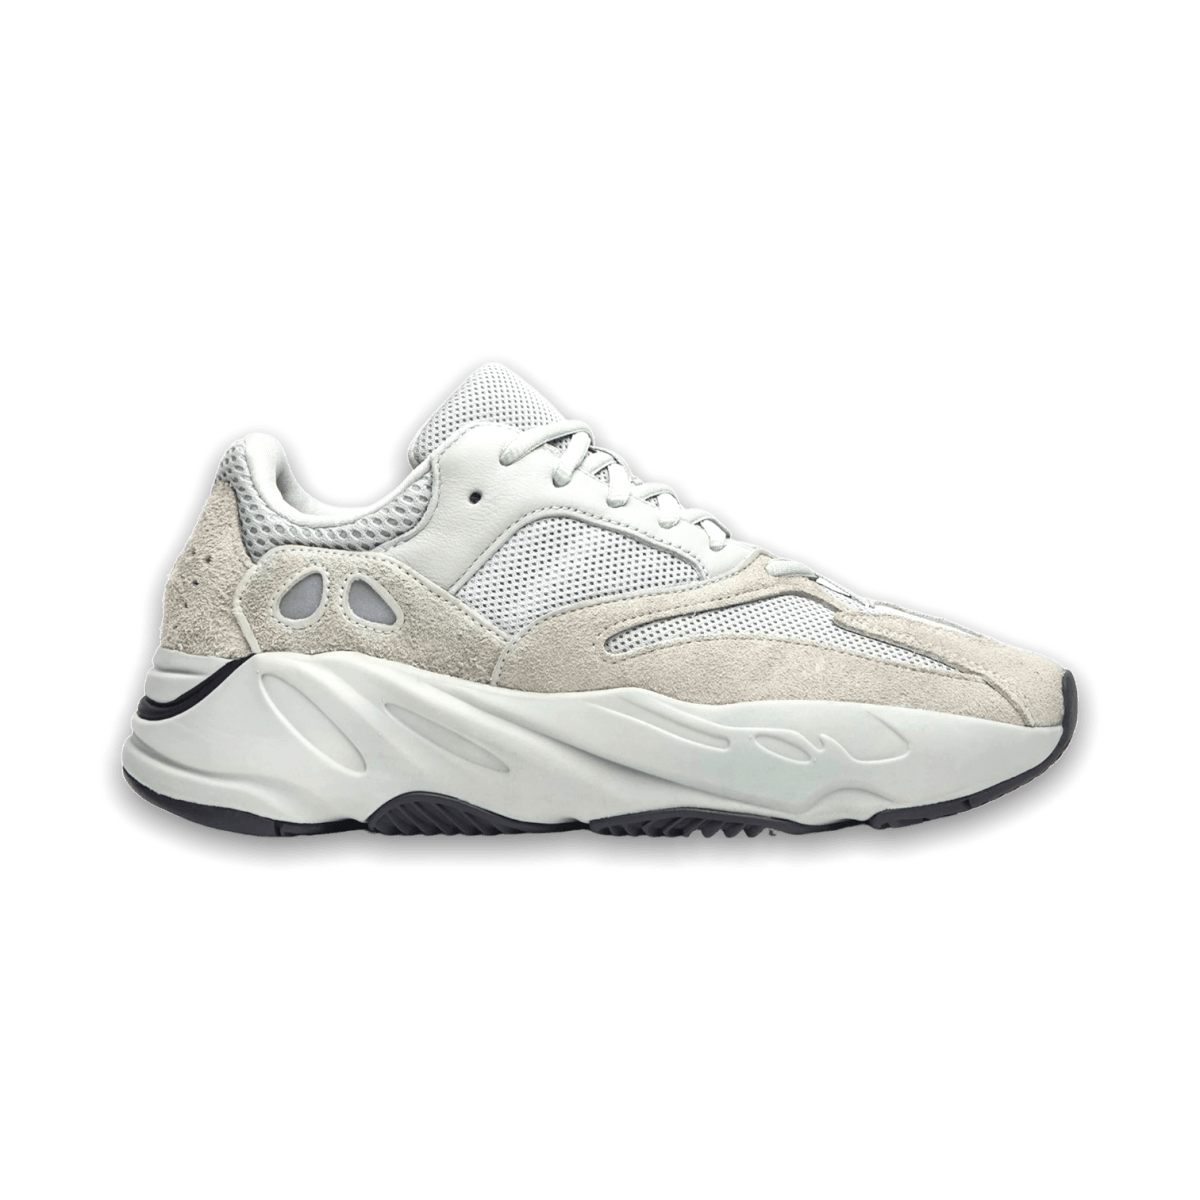 Yeezy Boost 700 'Salt' - Low Sneaker - Jawns on Fire Sneakers & Streetwear